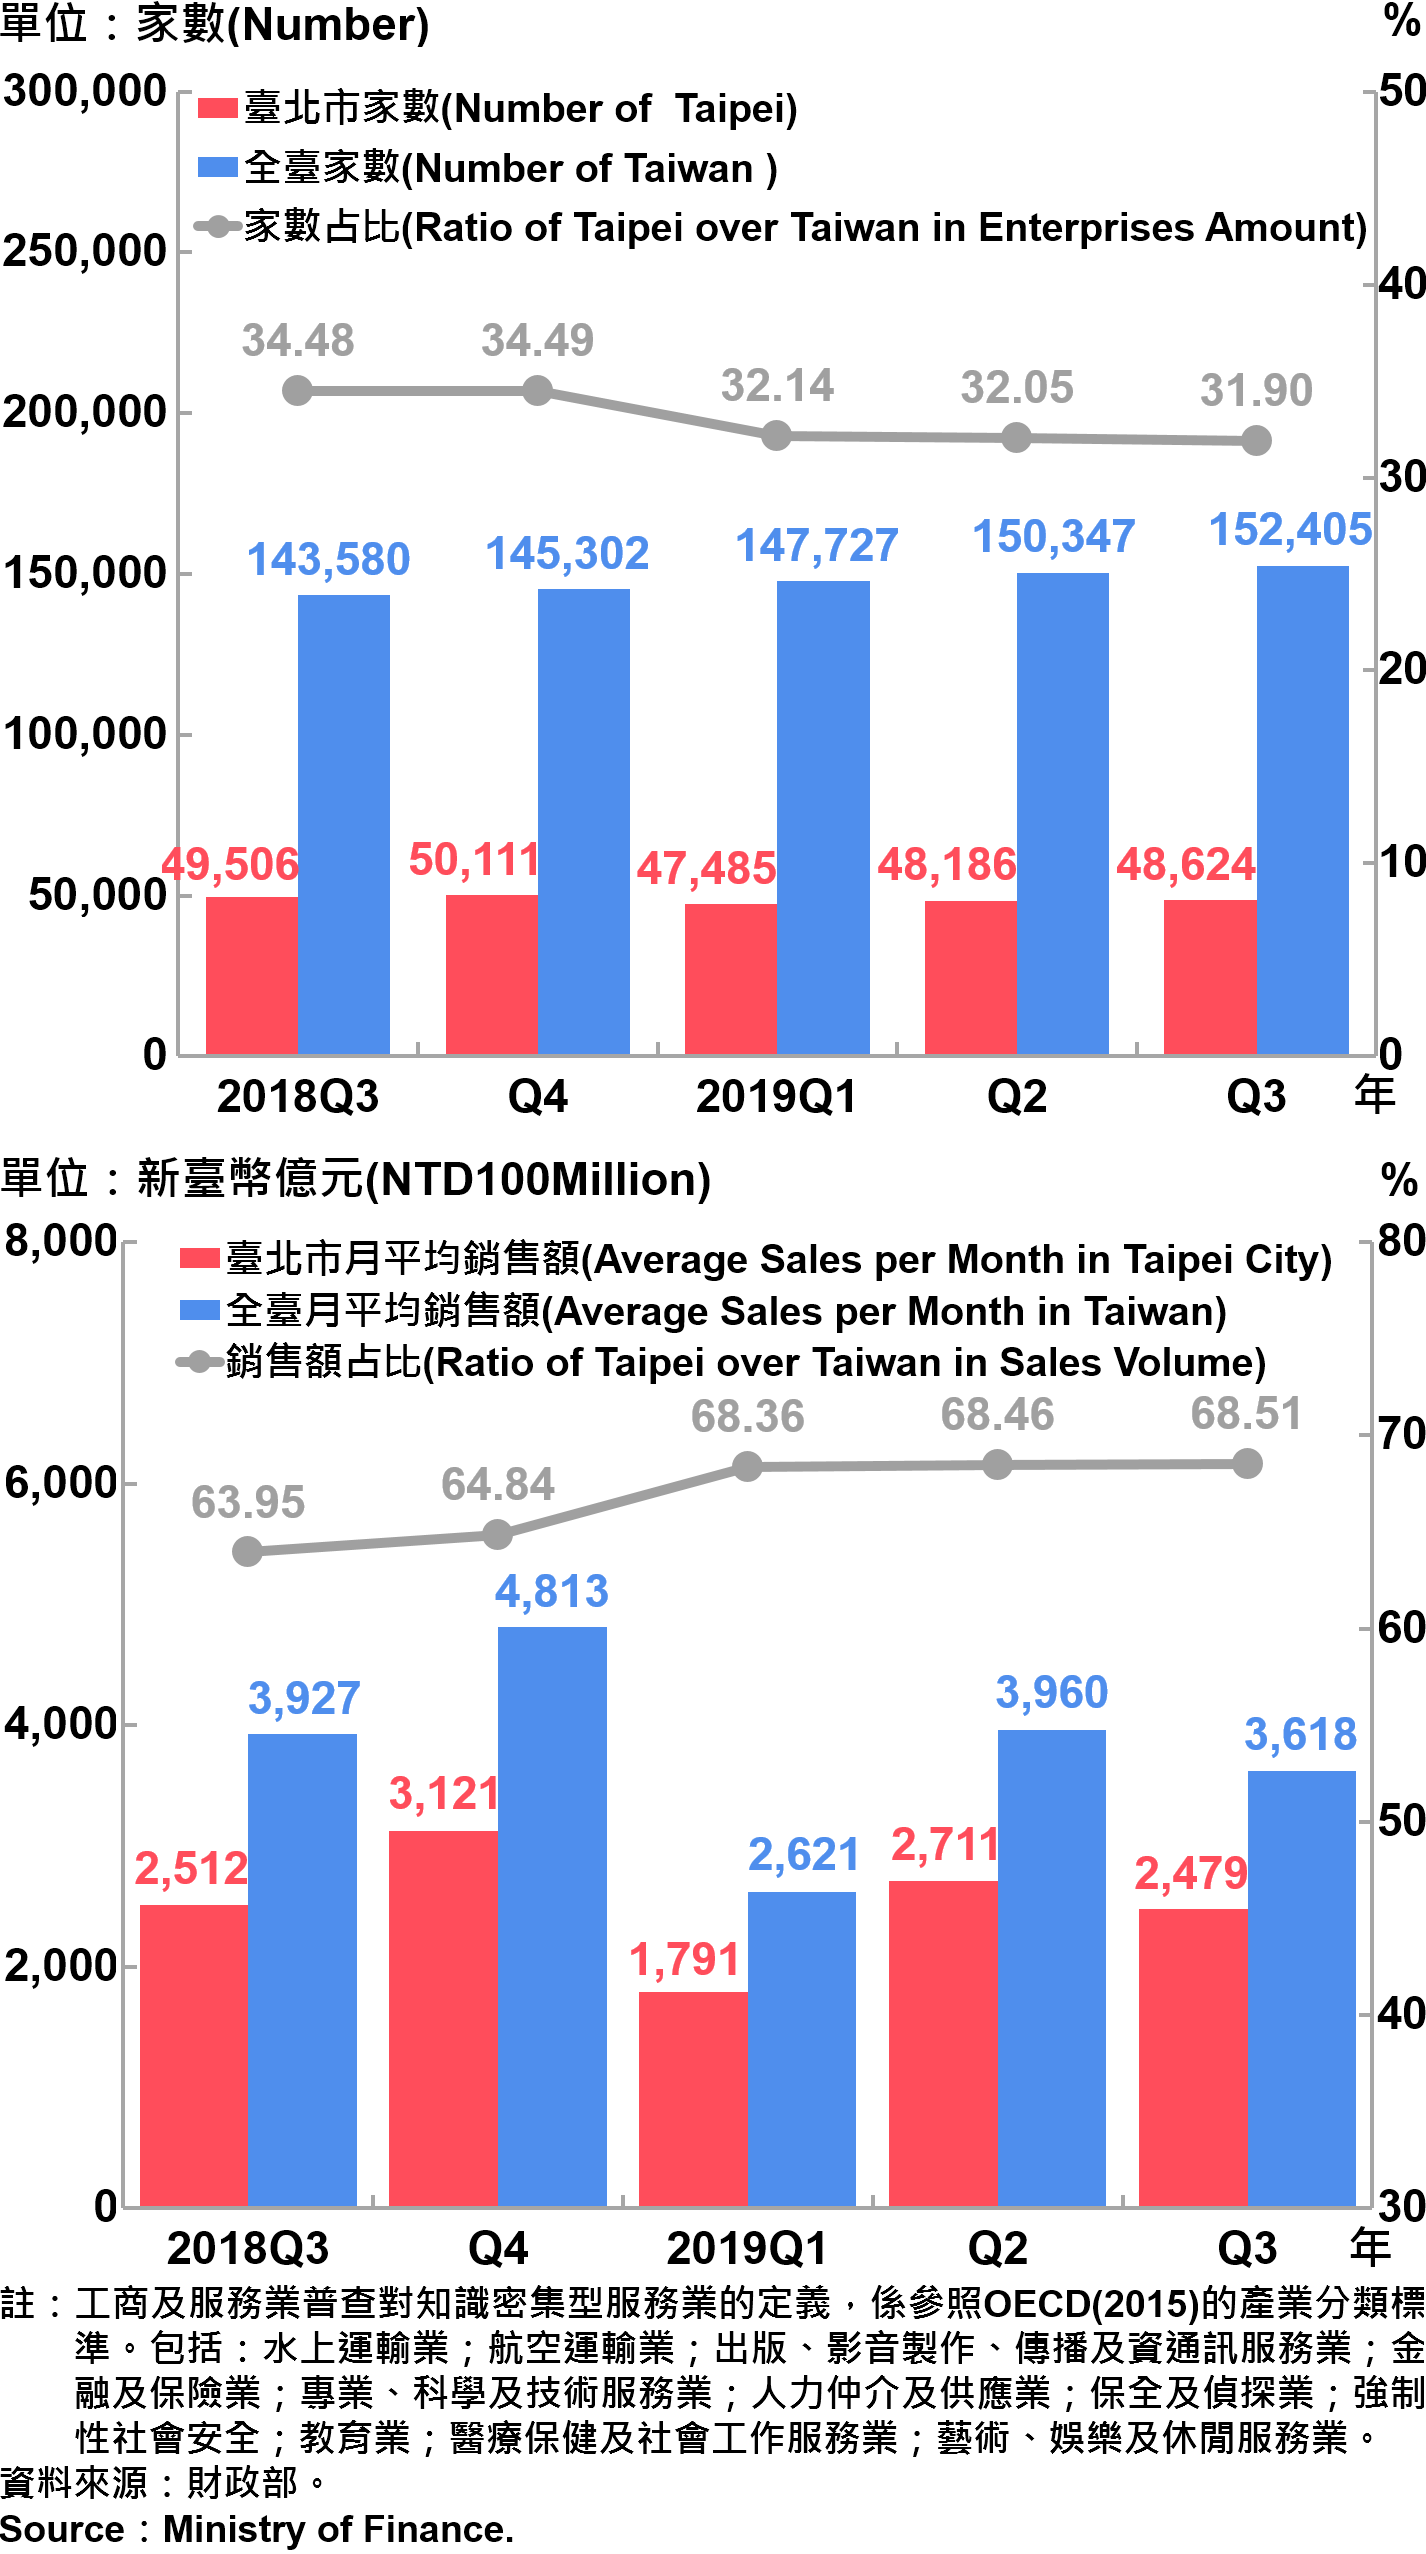 臺北市知識密集型服務業之家數及銷售額—2019Q3 Number and Sales of Knowledge Intensive Service Industry in Taipei City—2019Q3